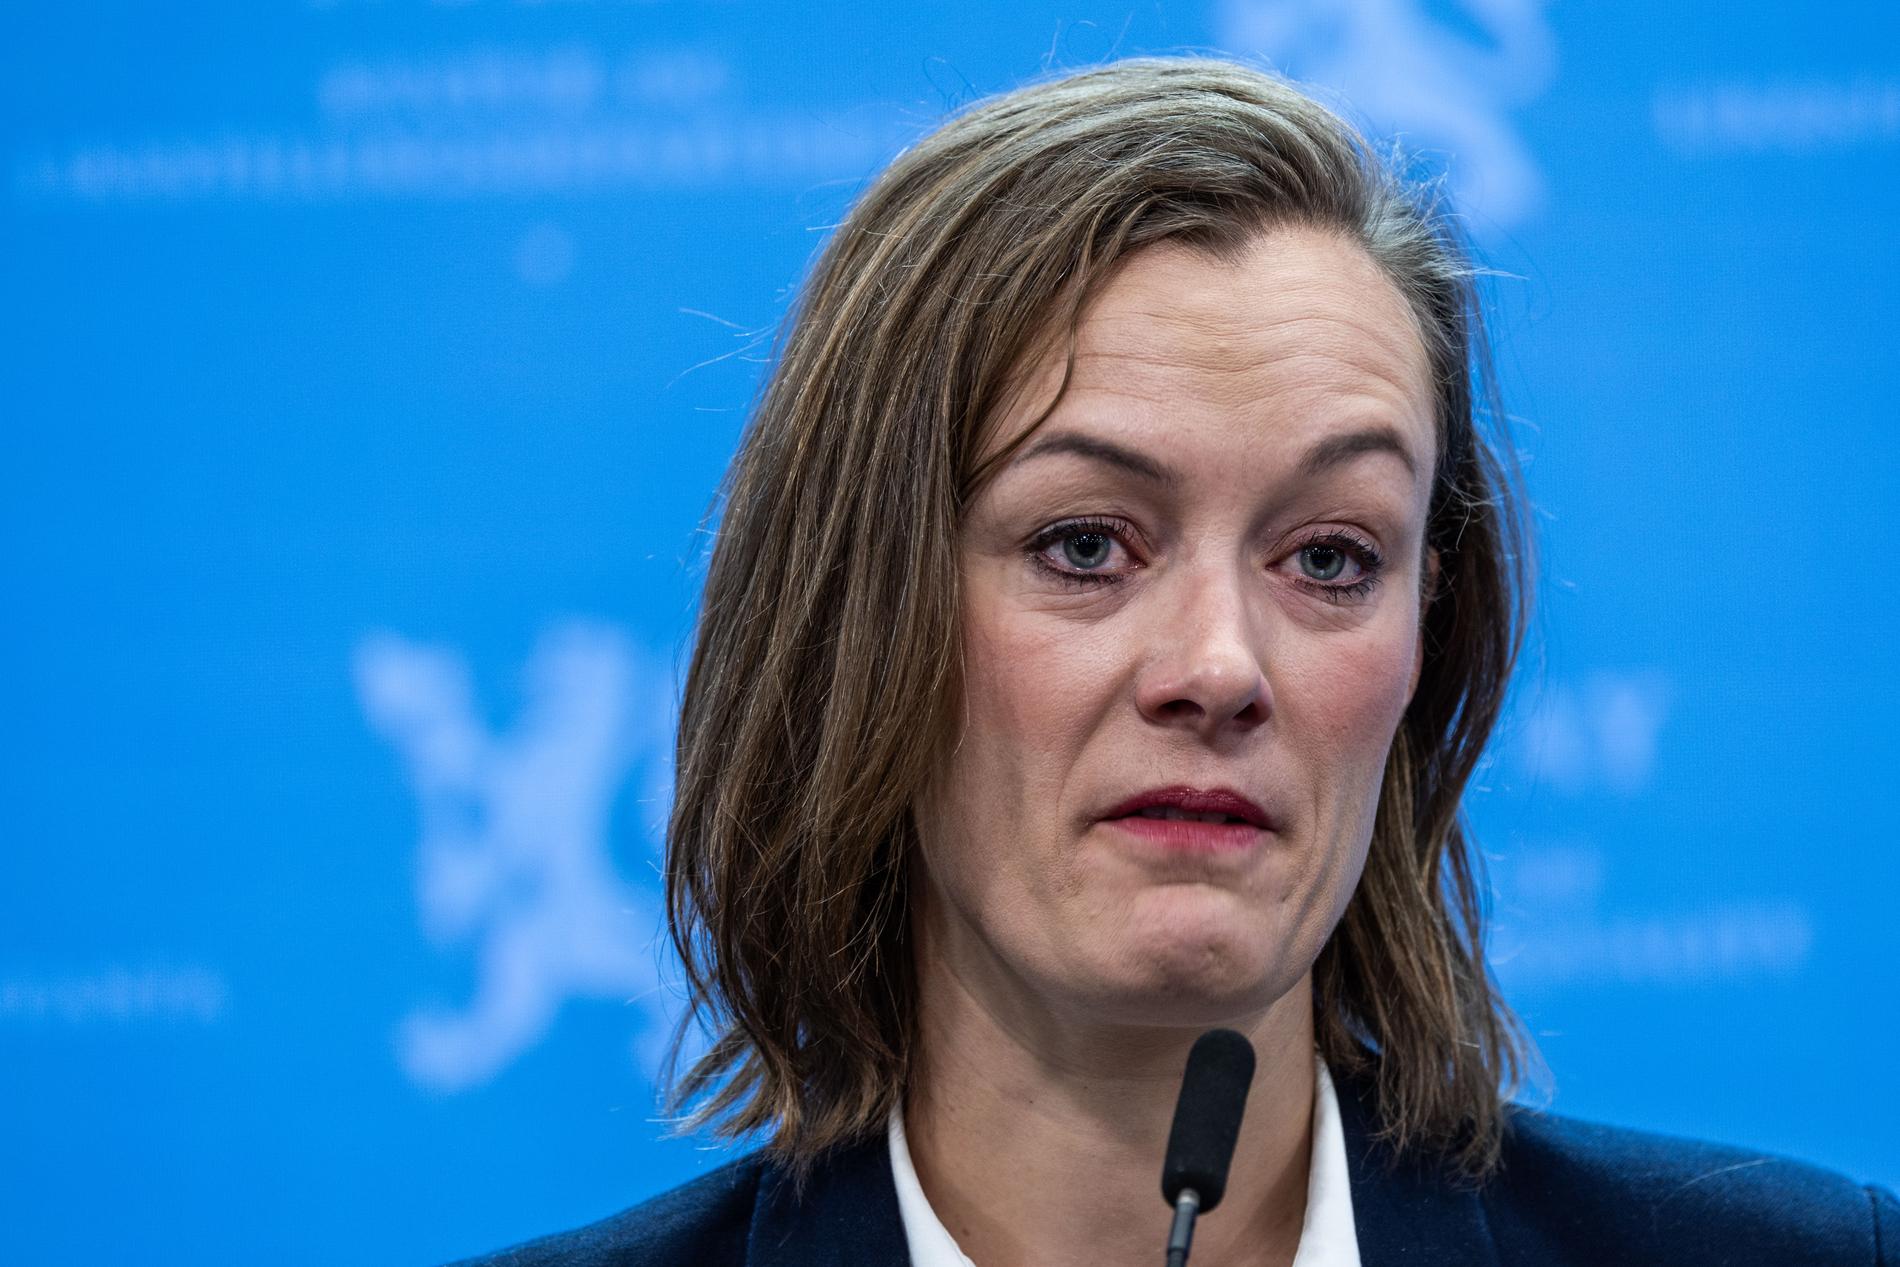 TÅREVÅT AVSKJED: Anette Trettebergstuen (Ap) gikk av som kulturminister i juni, etter at hun foreslo og oppnevnte nære venner og bekjente til verv.